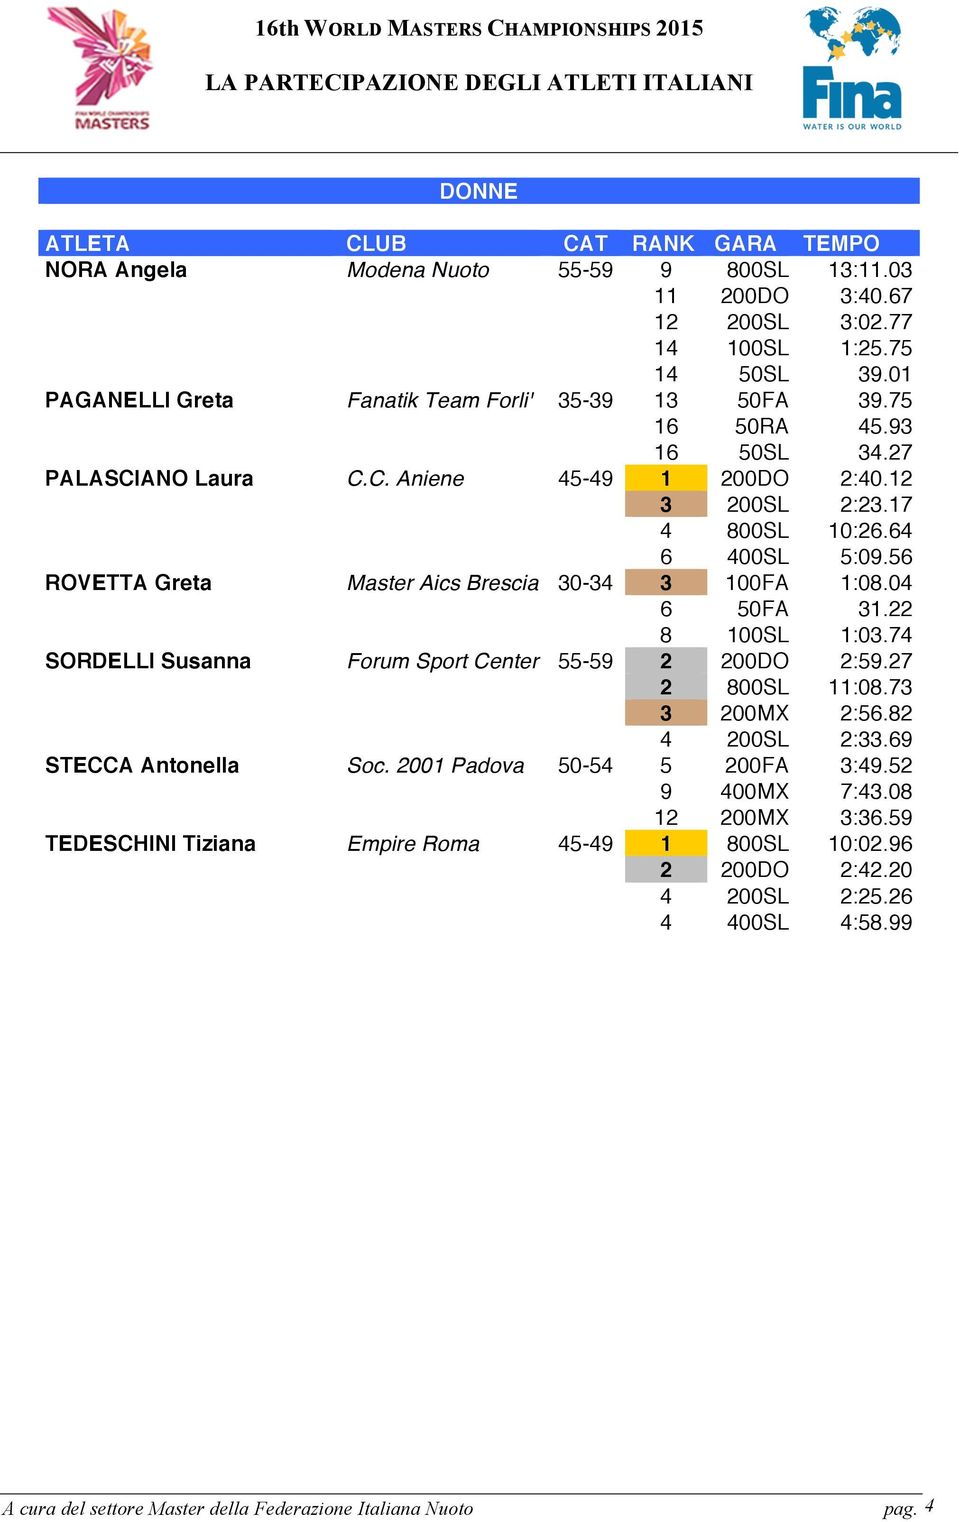 56 ROVETTA Greta Master Aics Brescia 0-4 00FA :08.04 6 50FA. 8 00SL :0.74 SORDELLI Susanna Forum Sport Center 55-59 00DO :59.7 800SL :08.7 00MX :56.8 4 00SL :.